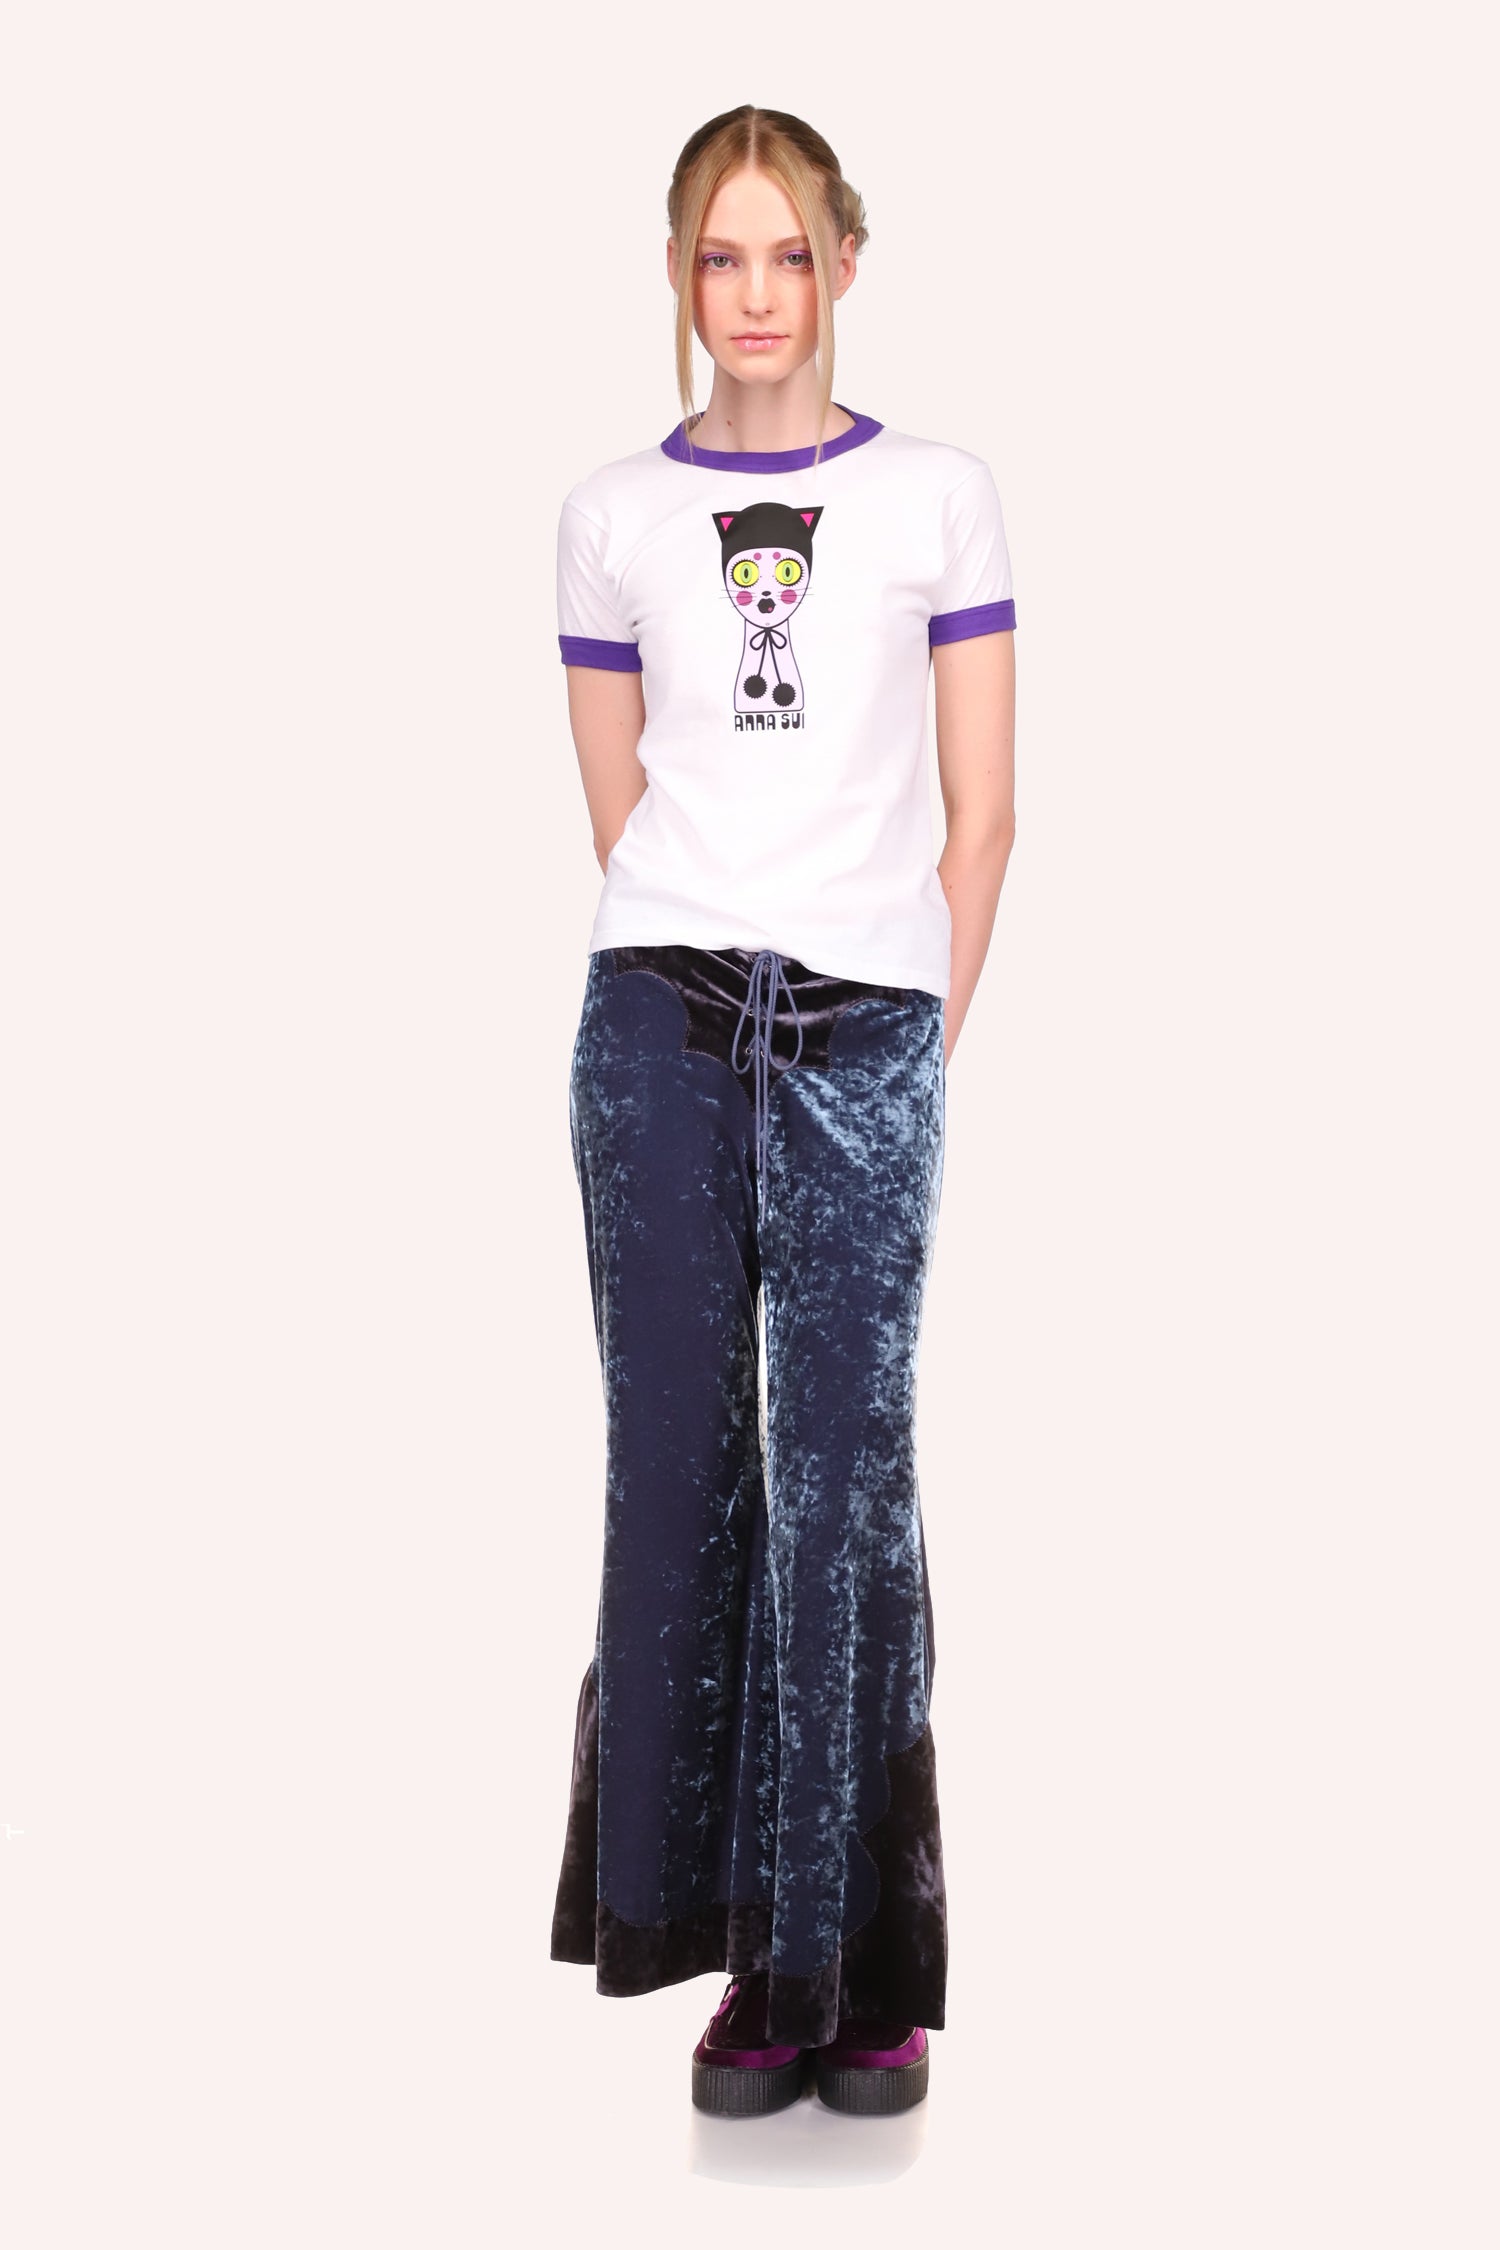  Le tee-shirt Cat Dolly Head Purple s'associe parfaitement à un pantalon à jambe large.